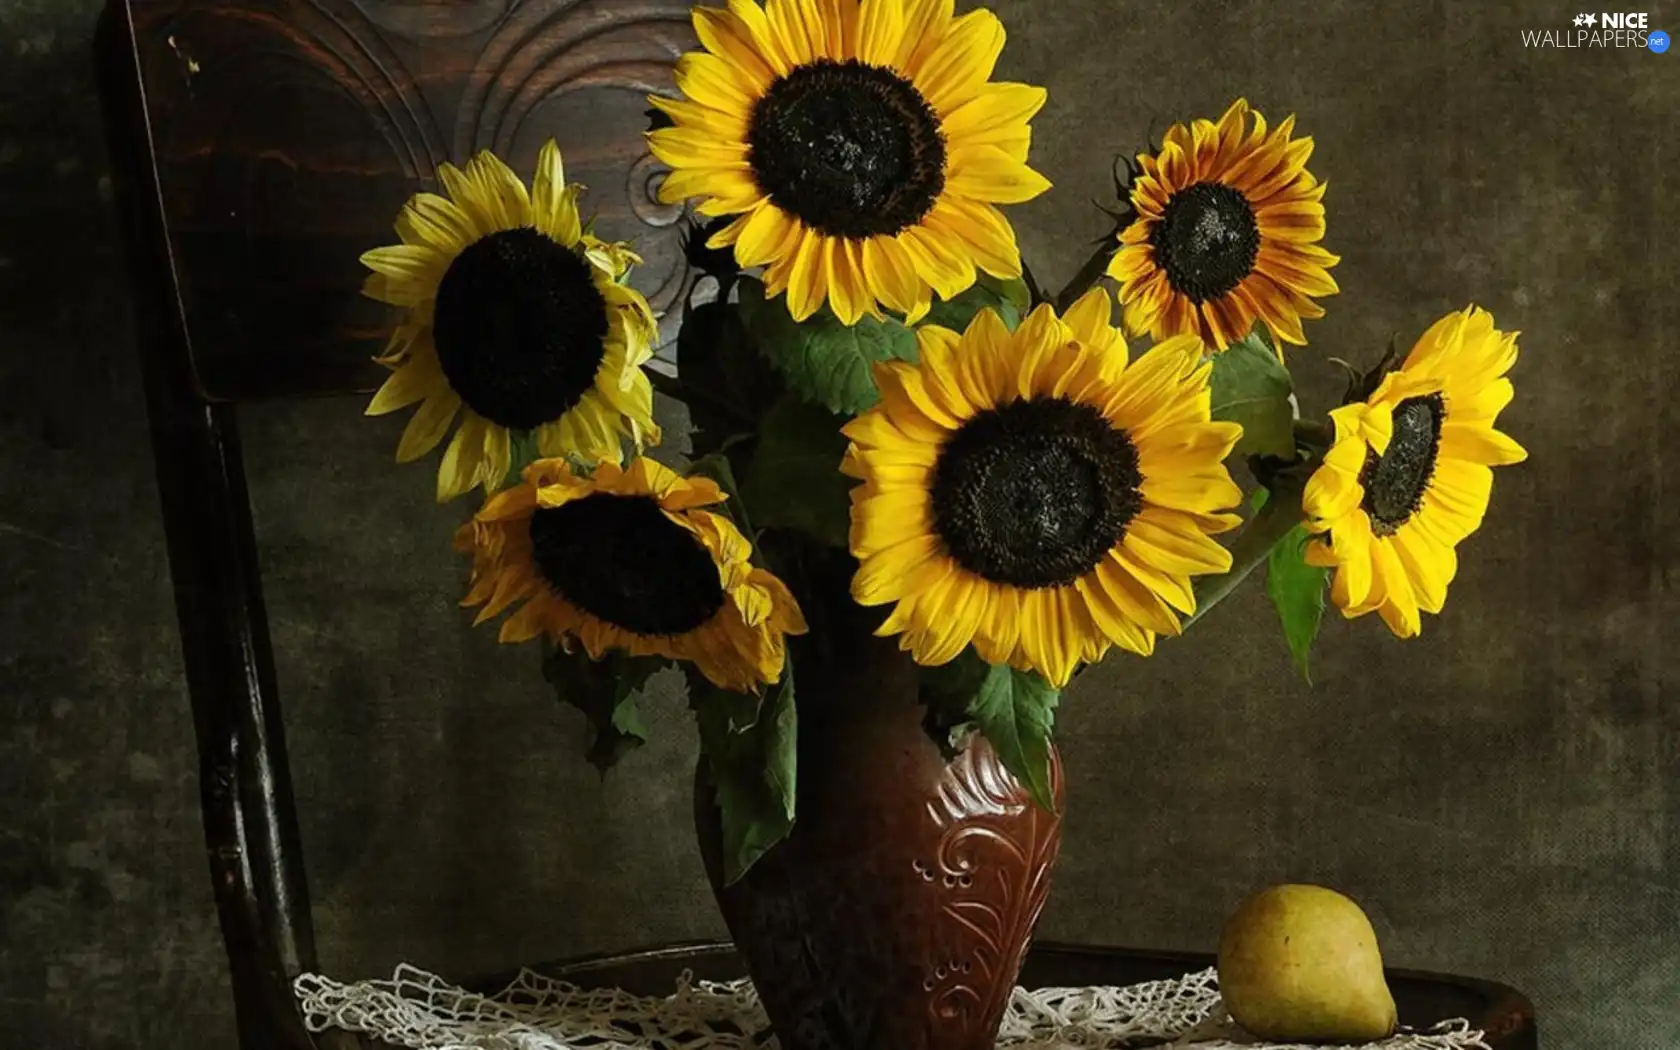 Vase, Flowers, Nice sunflowers